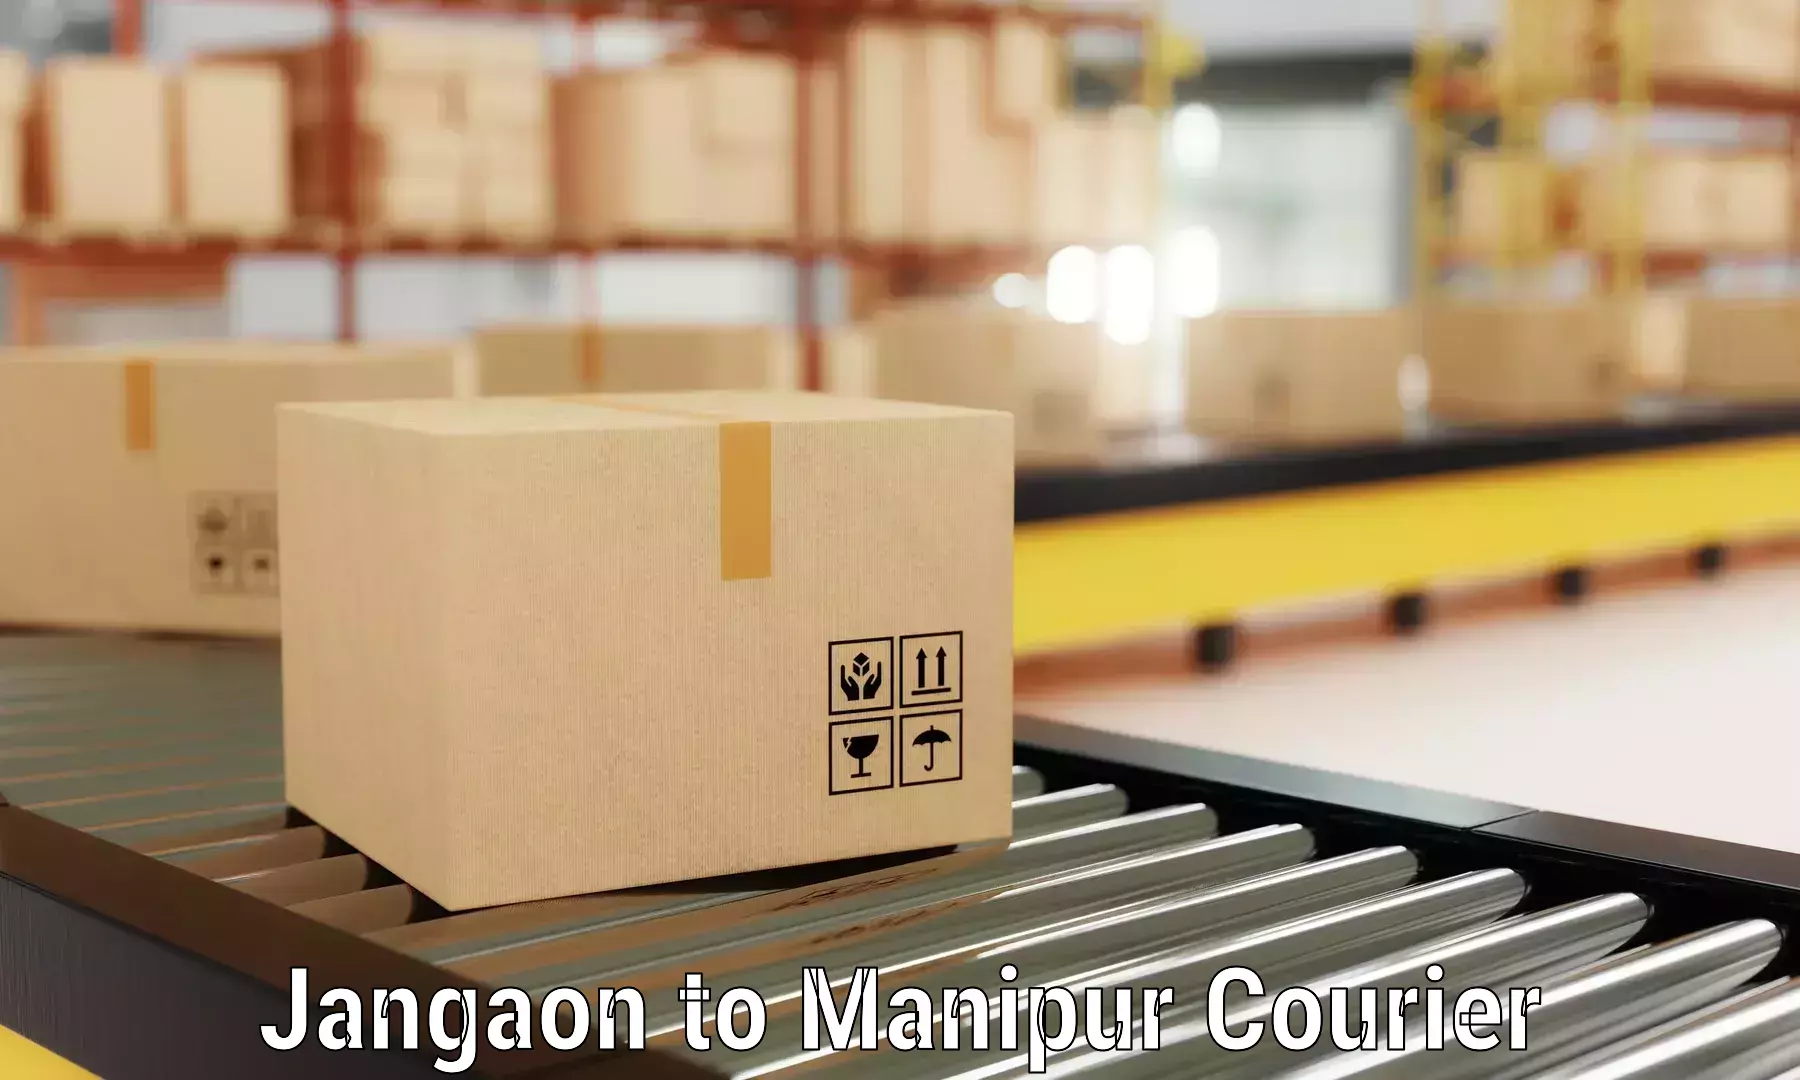 Furniture transport service Jangaon to Moirang